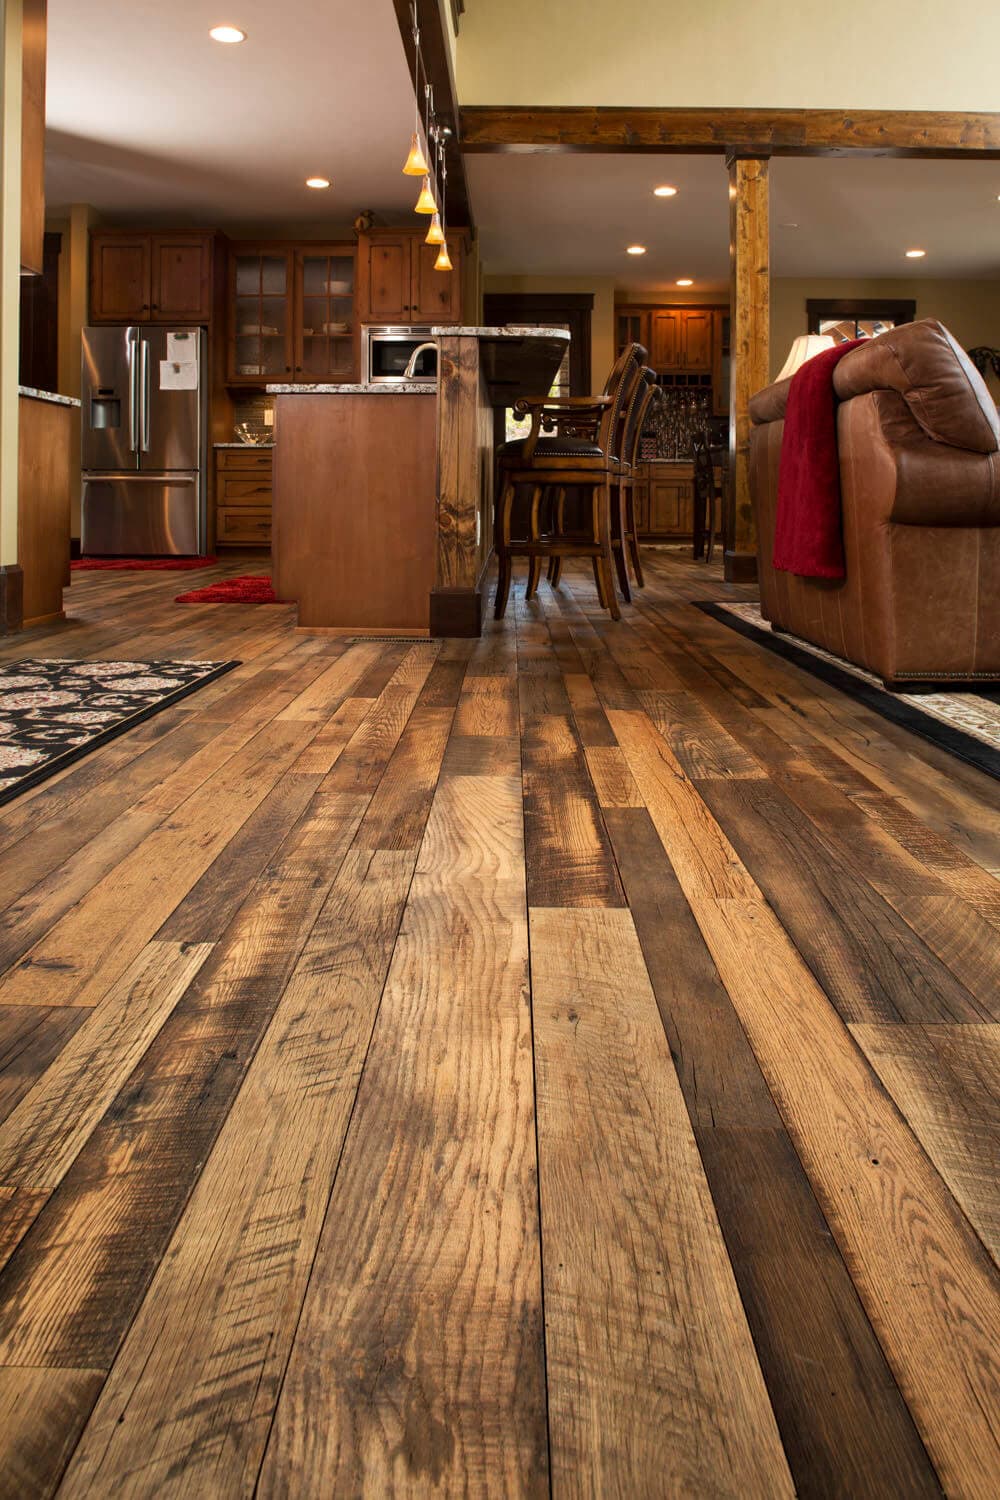 Rustic reclaimed hardwood flooring in kitchen.